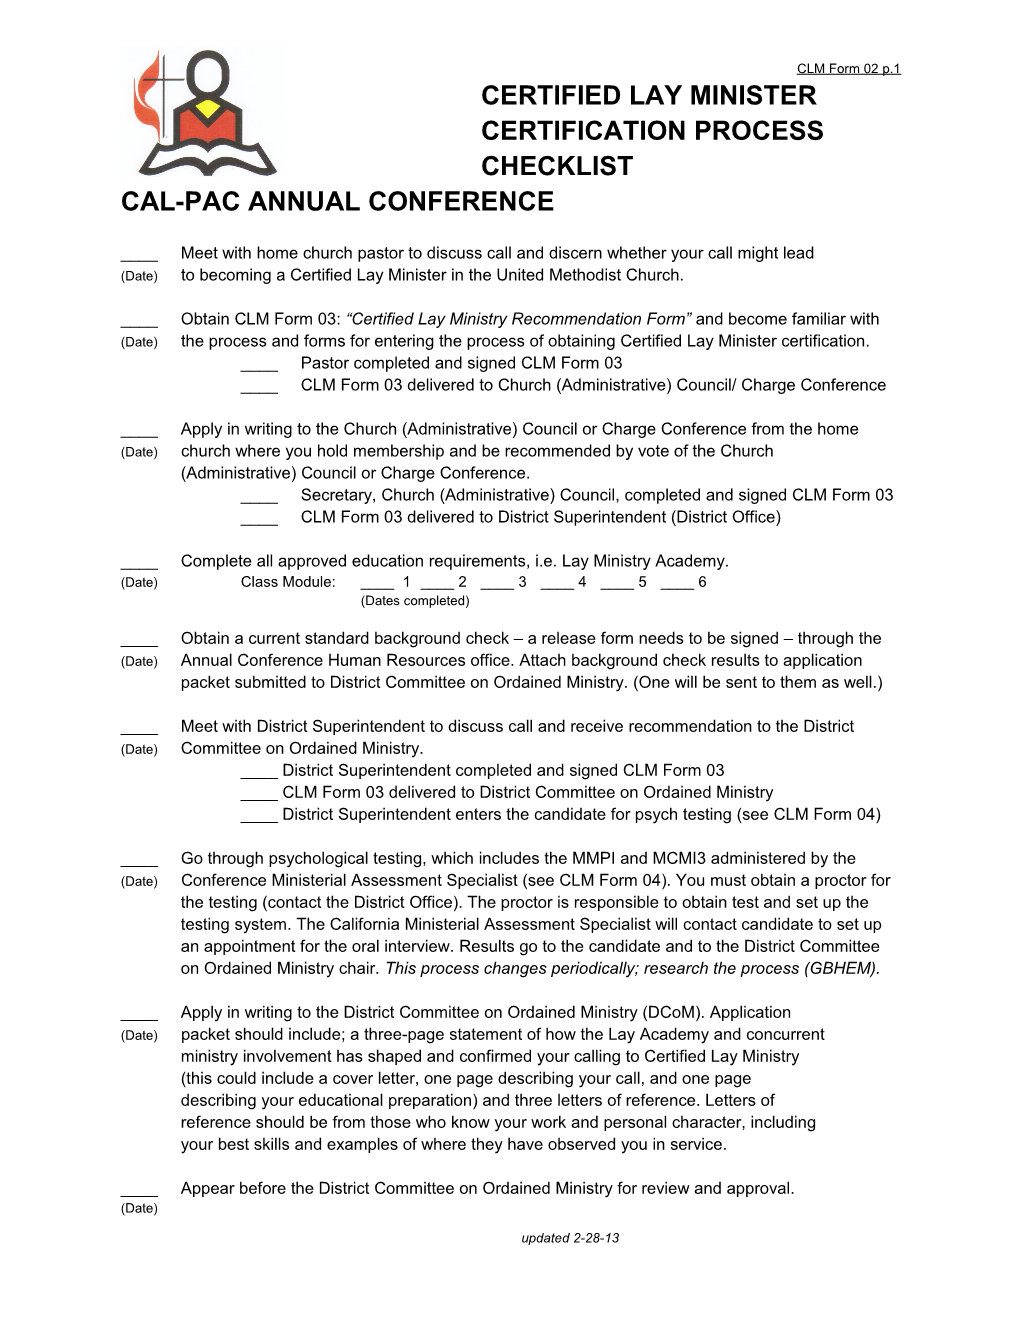 California-Pacific Annual Conference